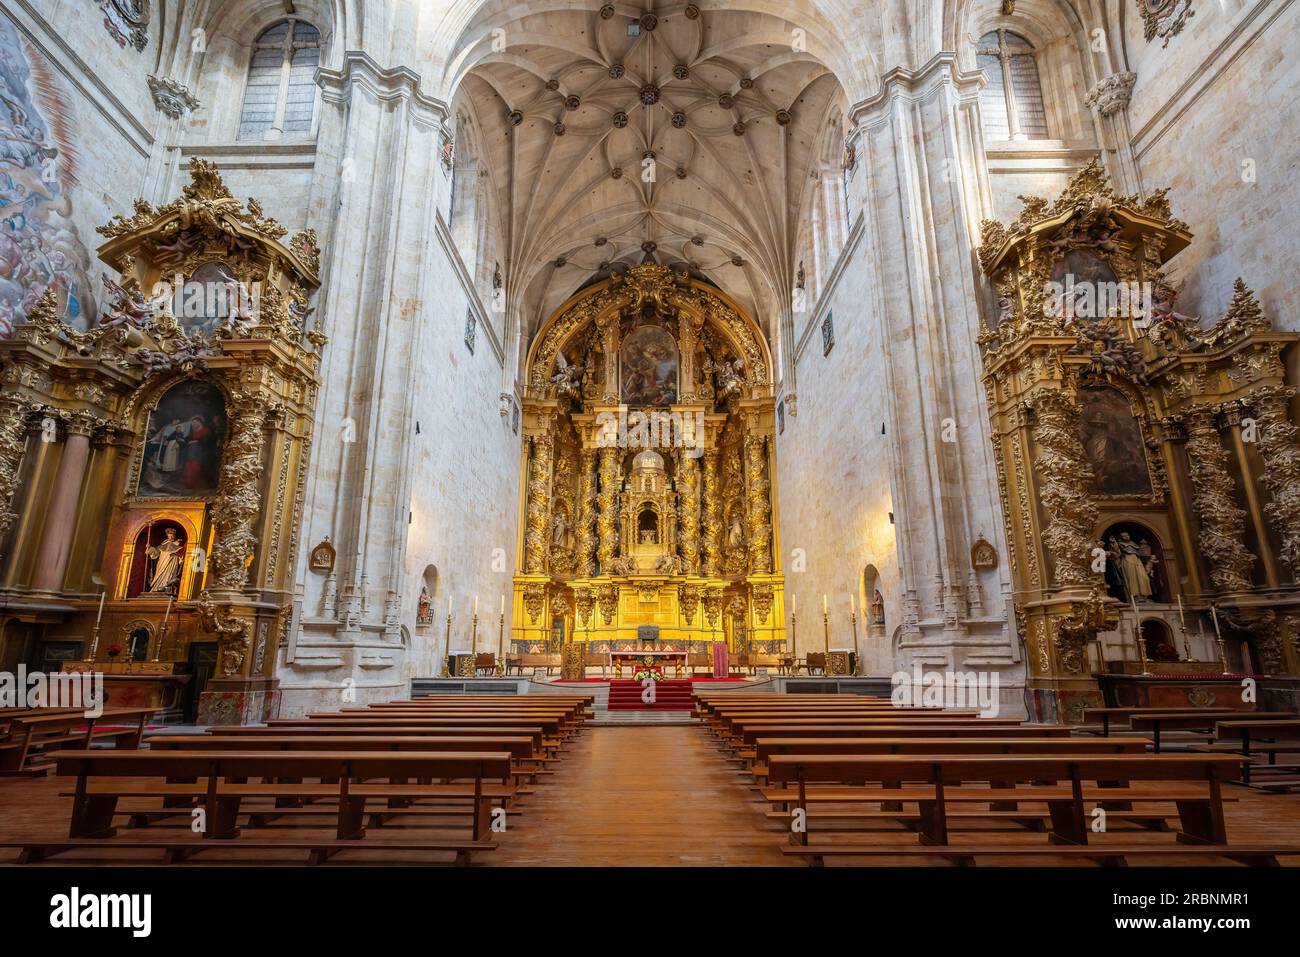 Altar of San Esteban Convent Church - Salamanca, Spain Stock Photo